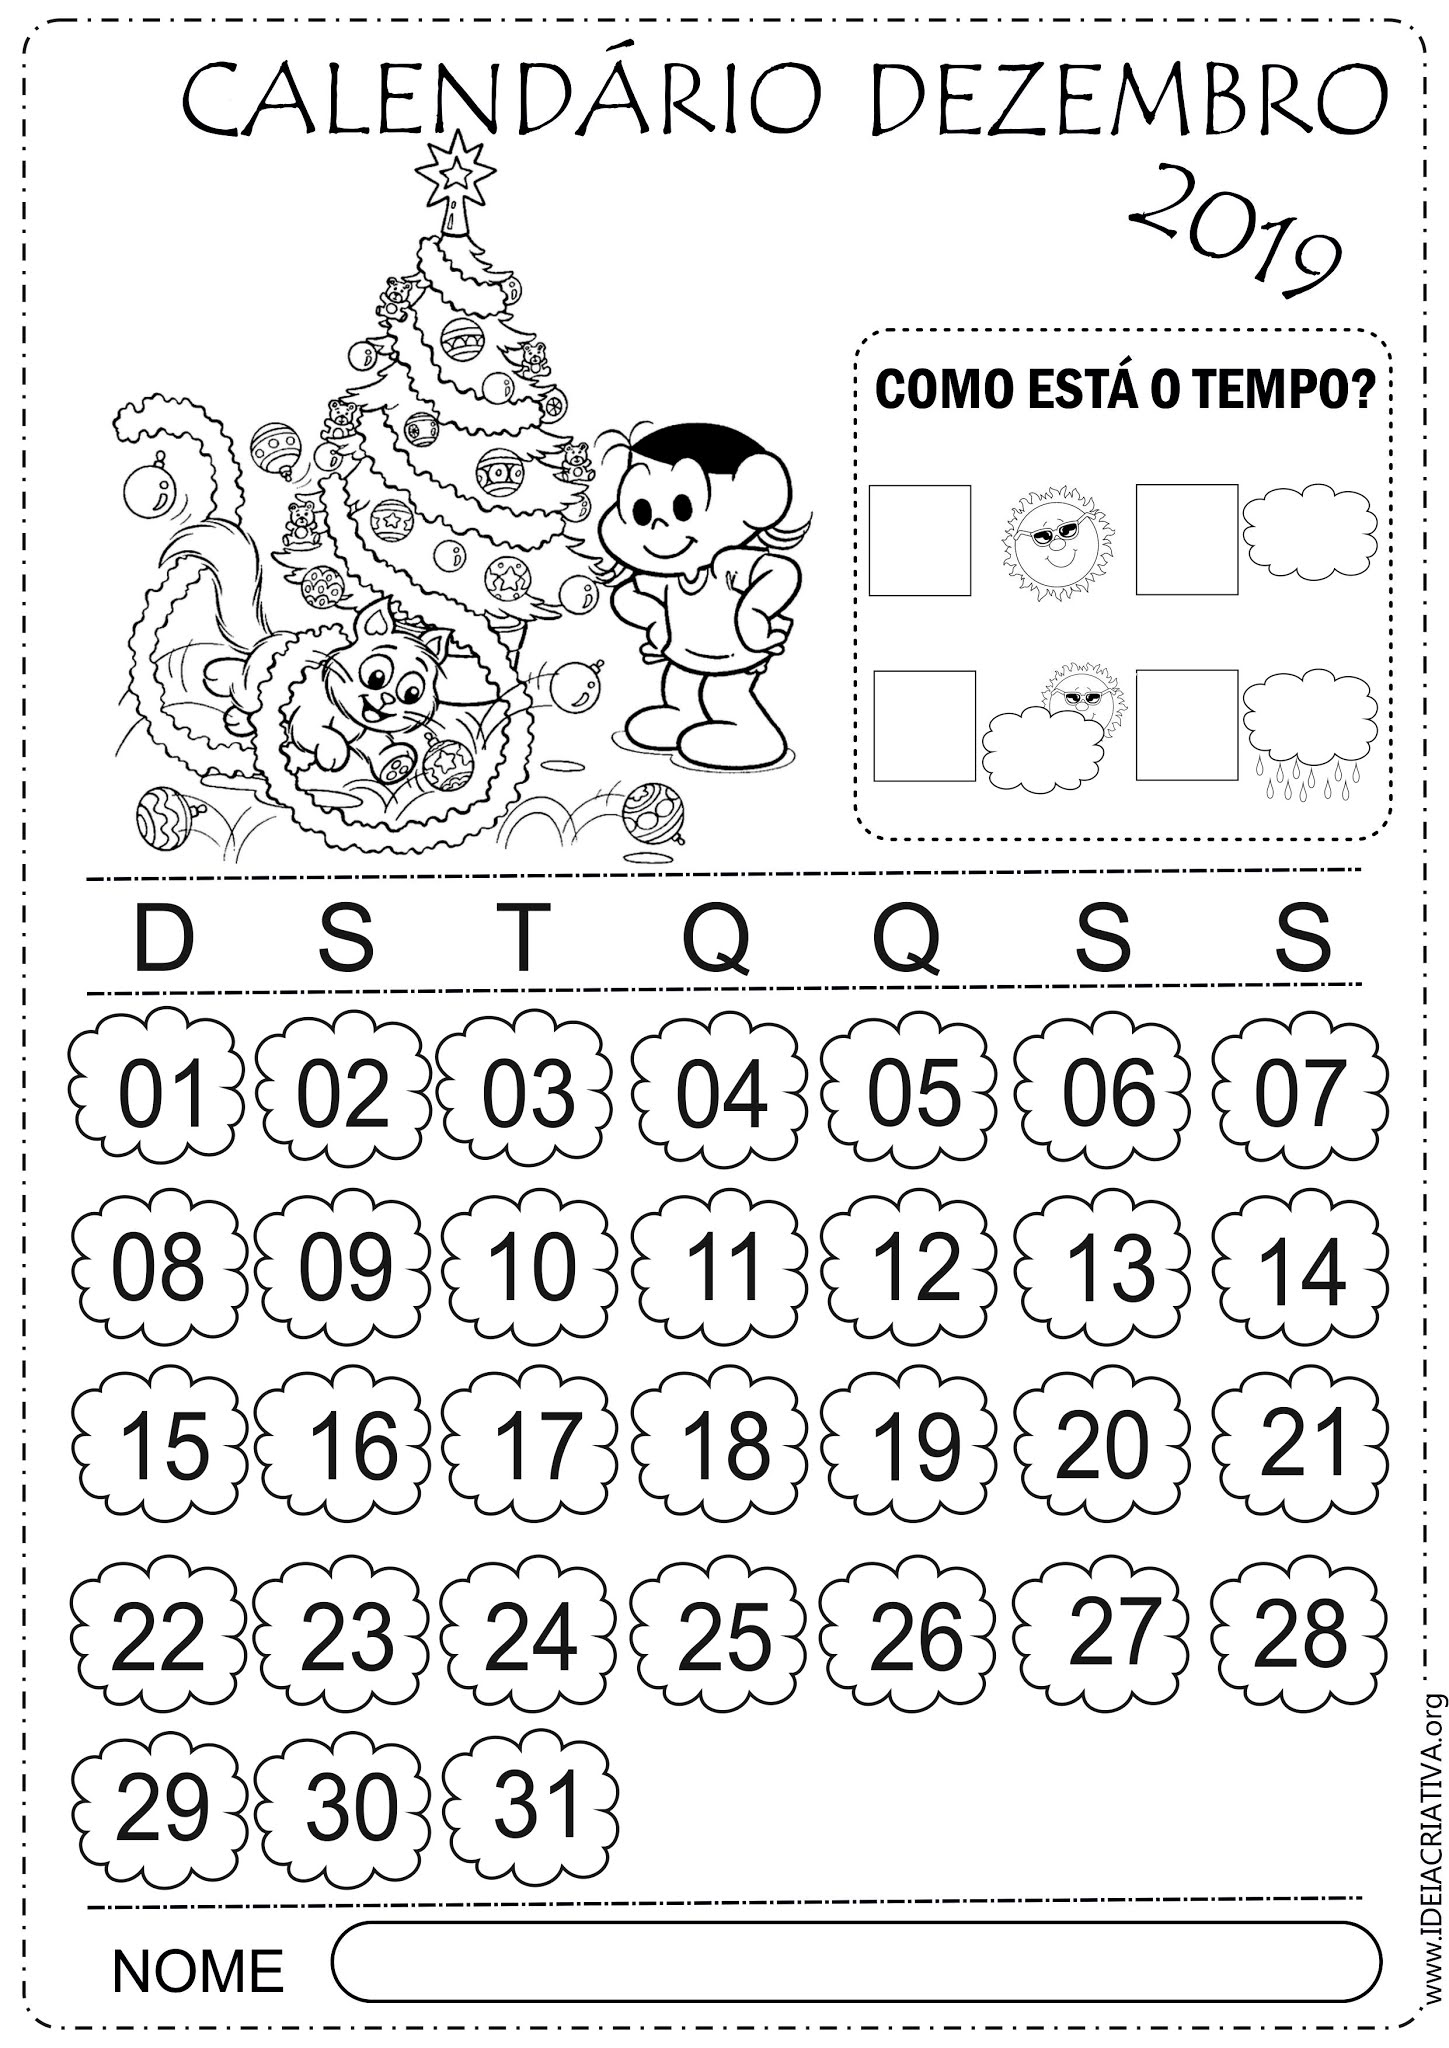 Calendários Dezembro Turma da Mônica 2019 para imprimir e colorir